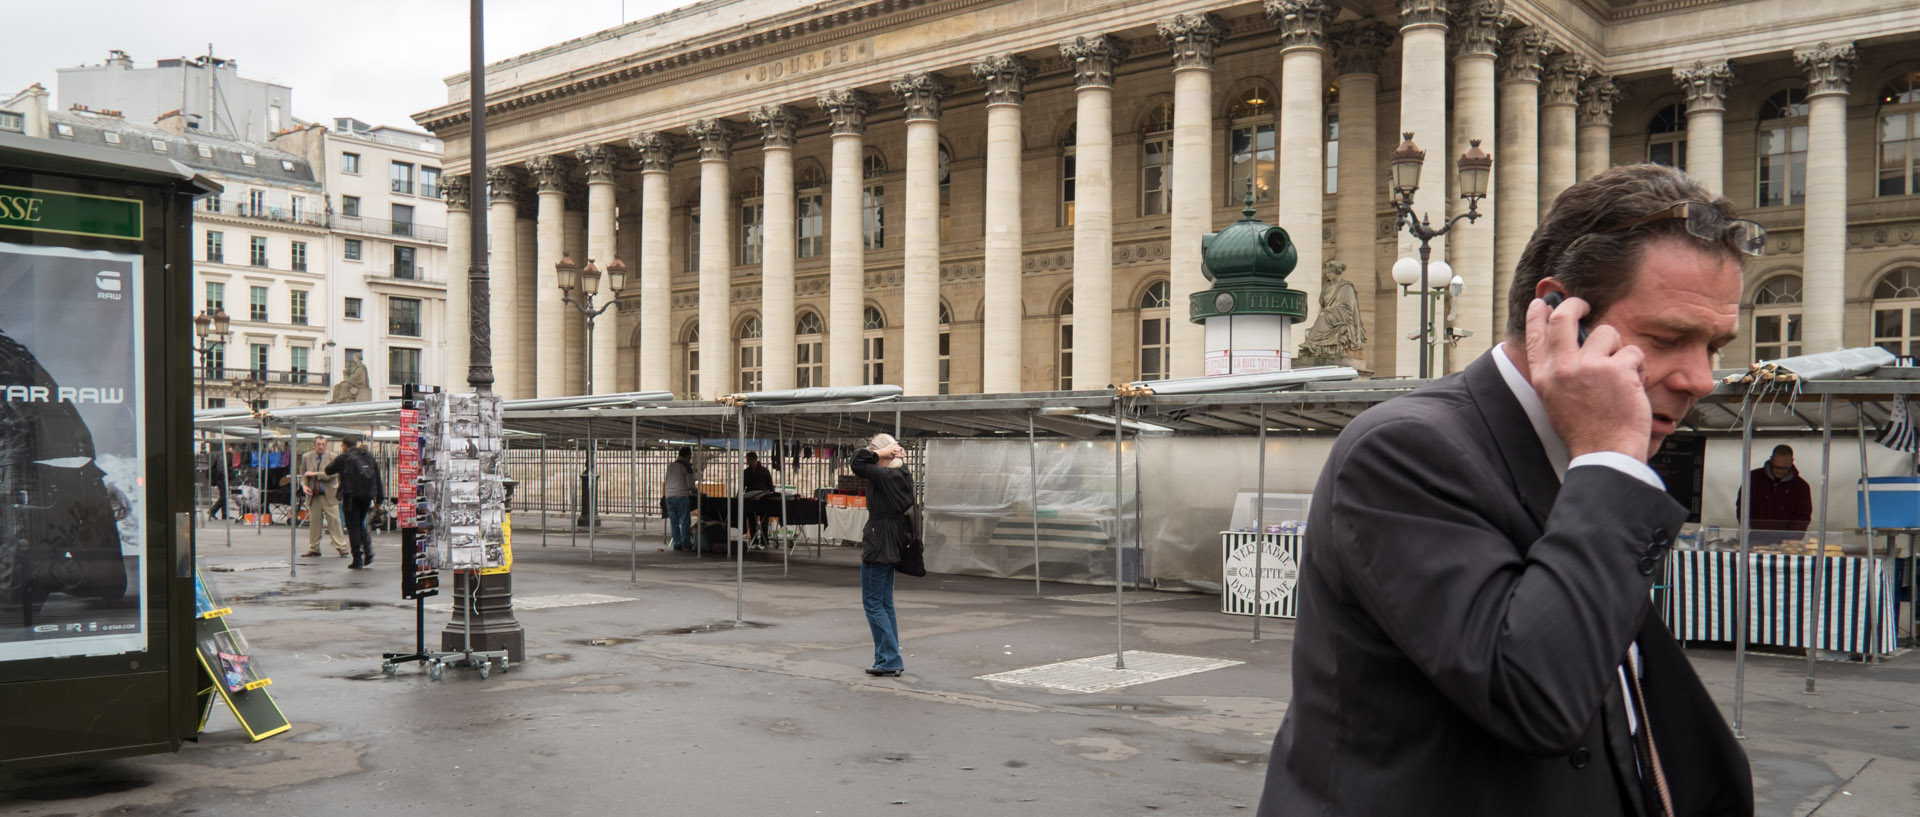 Homme avec son téléphone portable devant la bouse, à Paris.